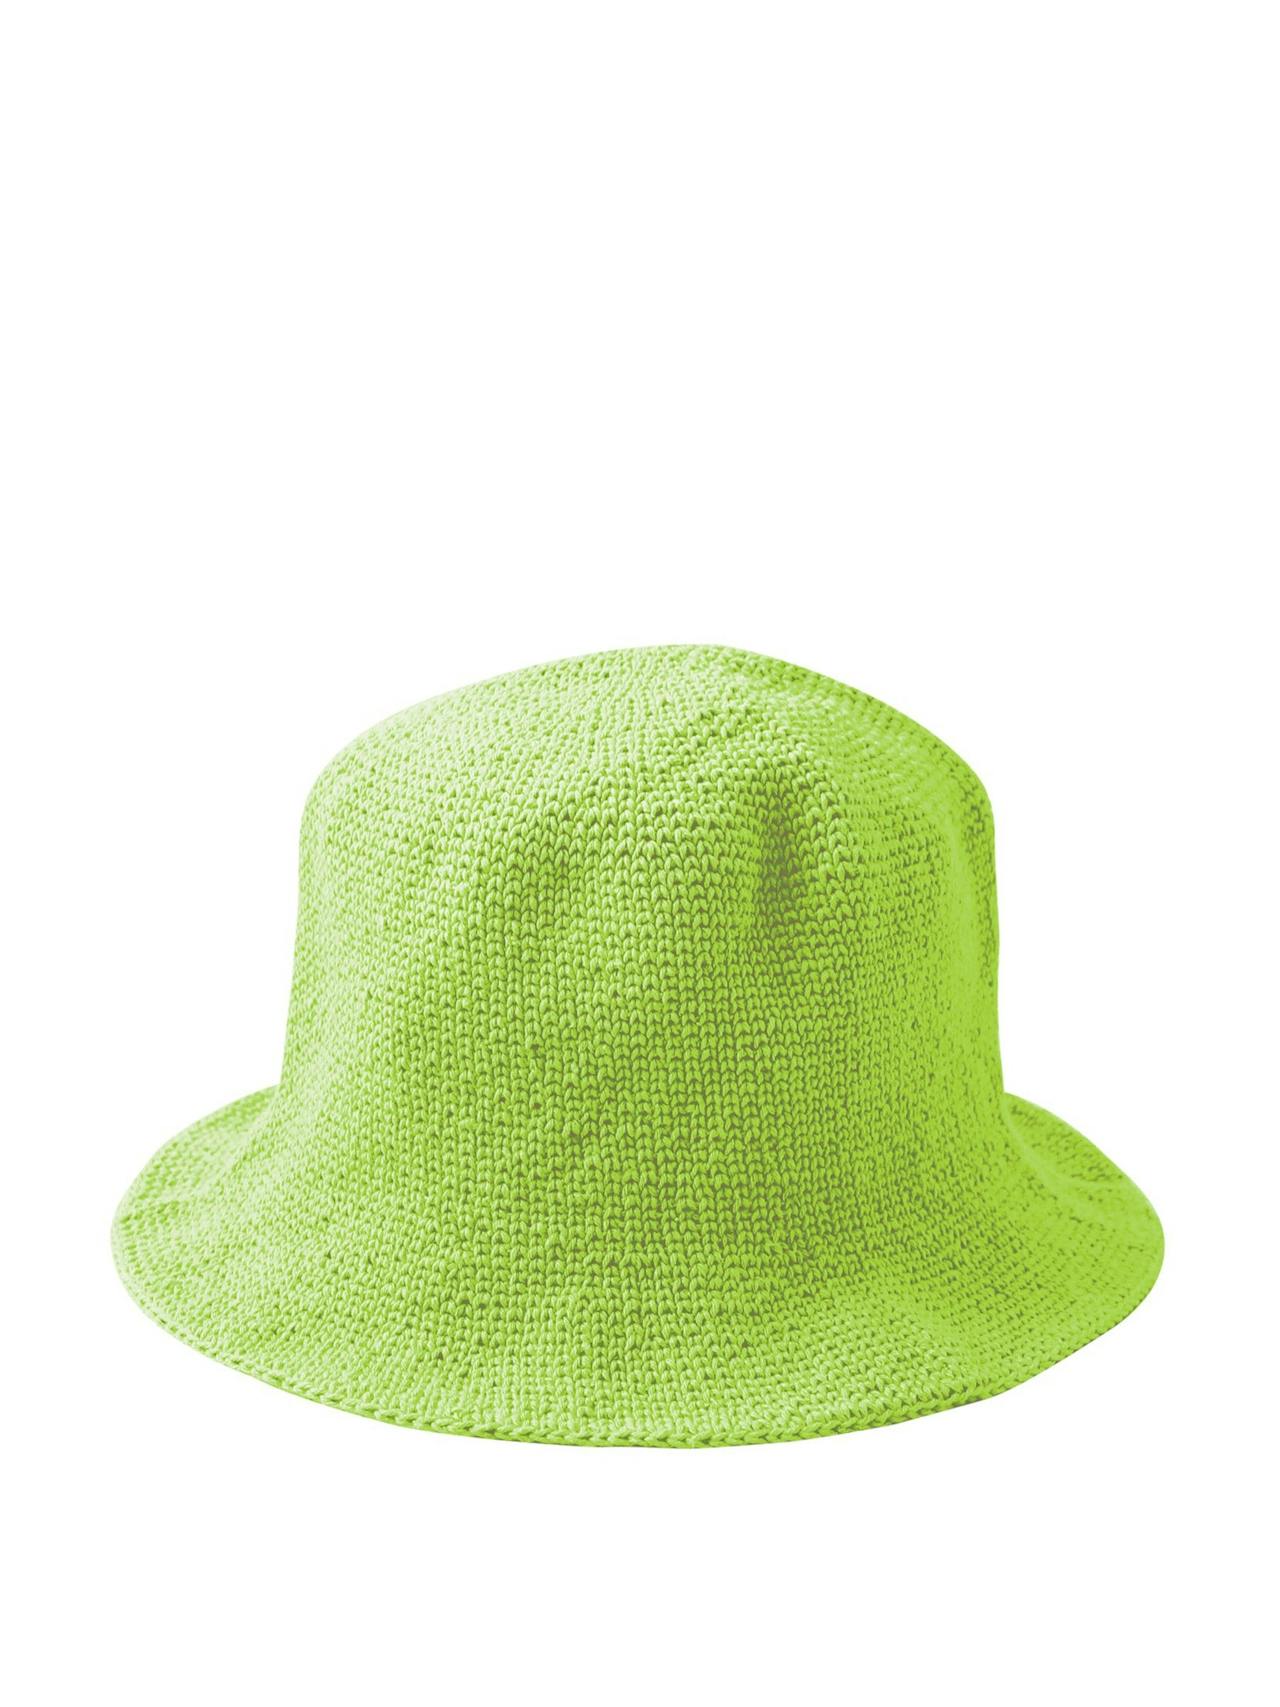 Florette crochet bucket hat in lime green